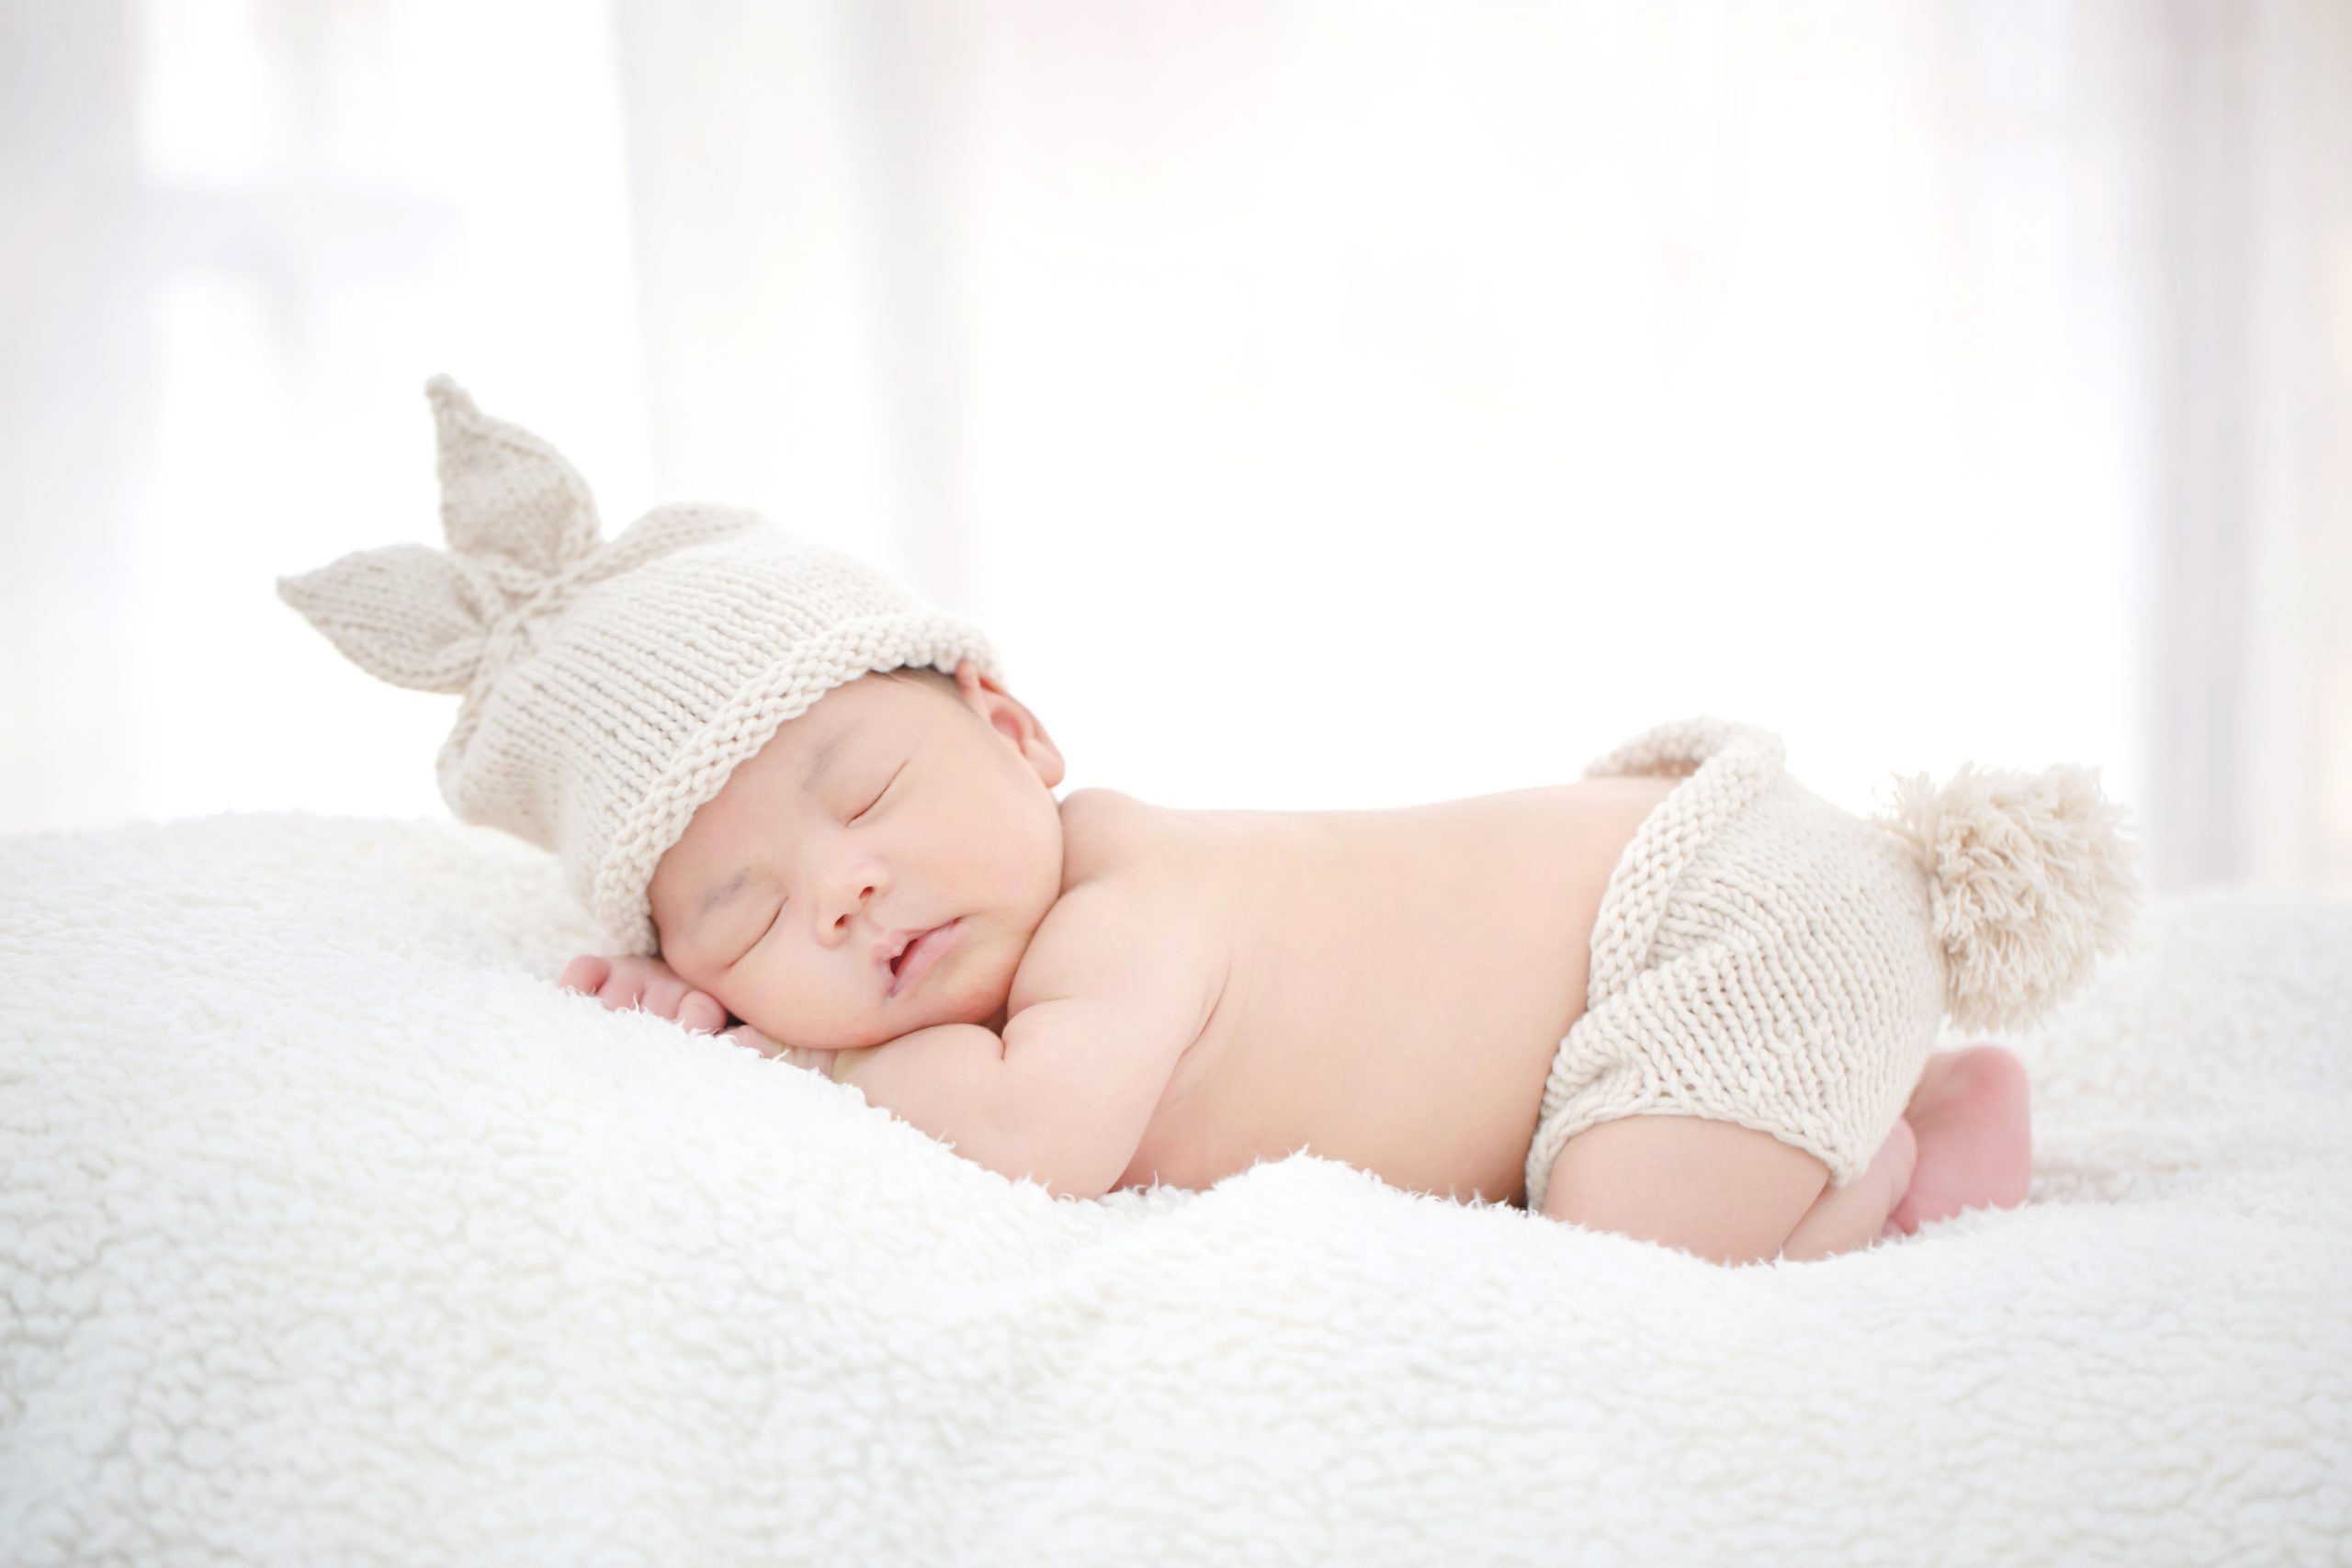 Chi phí IVF sinh con trai là bao nhiêu?